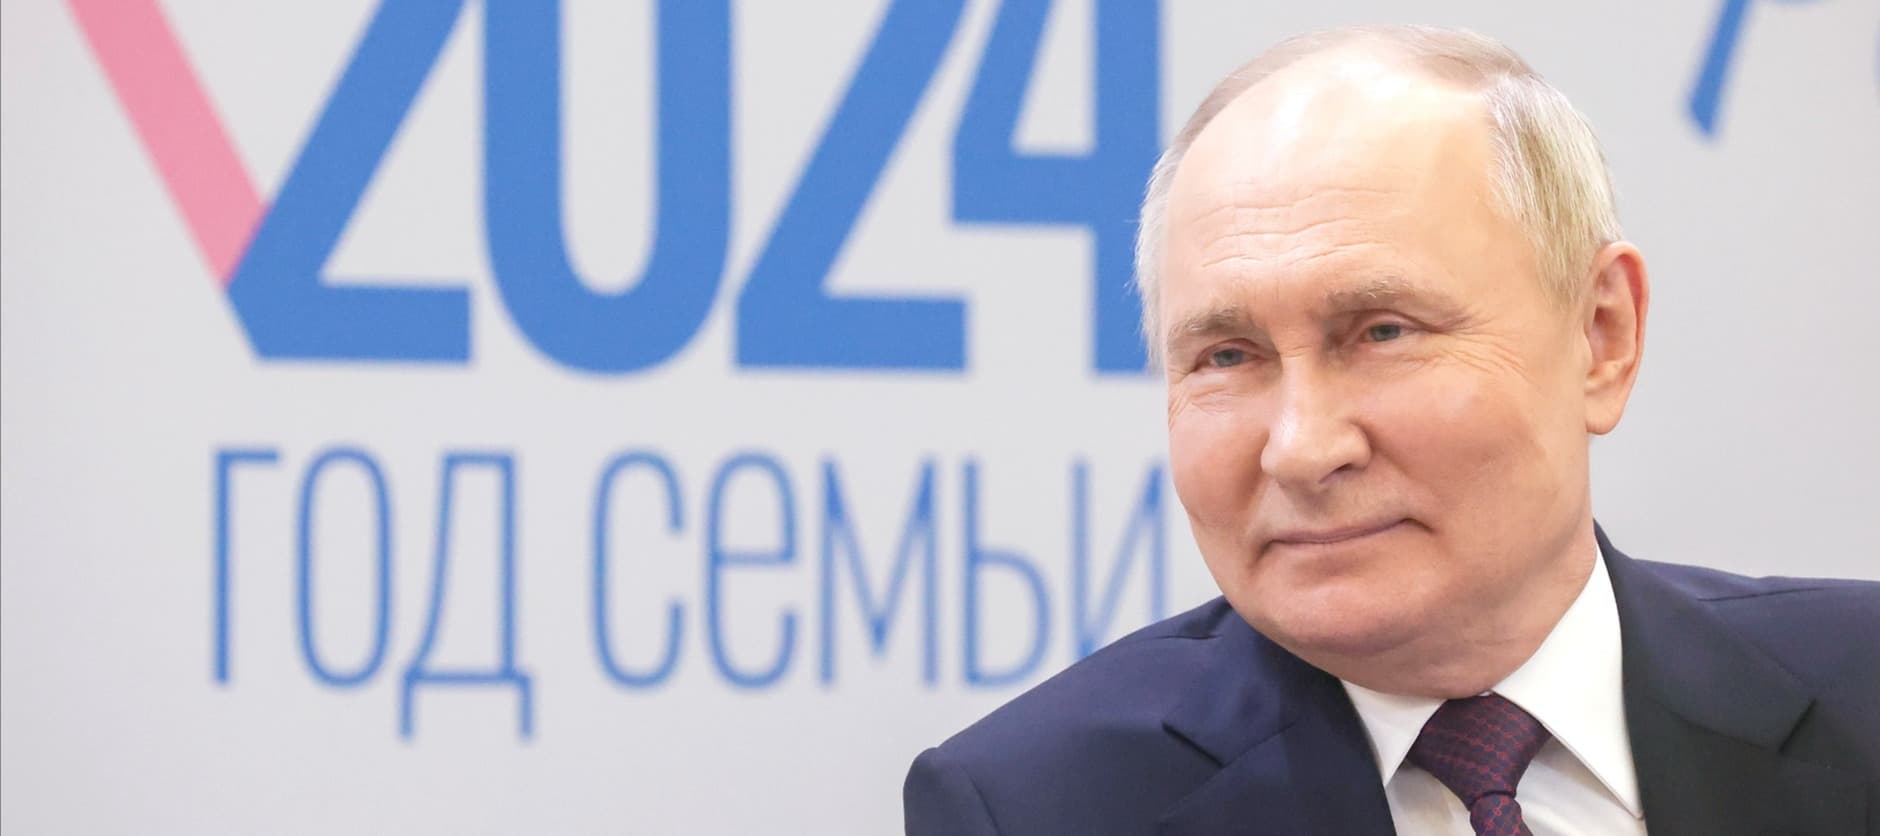 Фото новости: "Путин пообещал проработать вопрос создания государственной продуктовой сети"